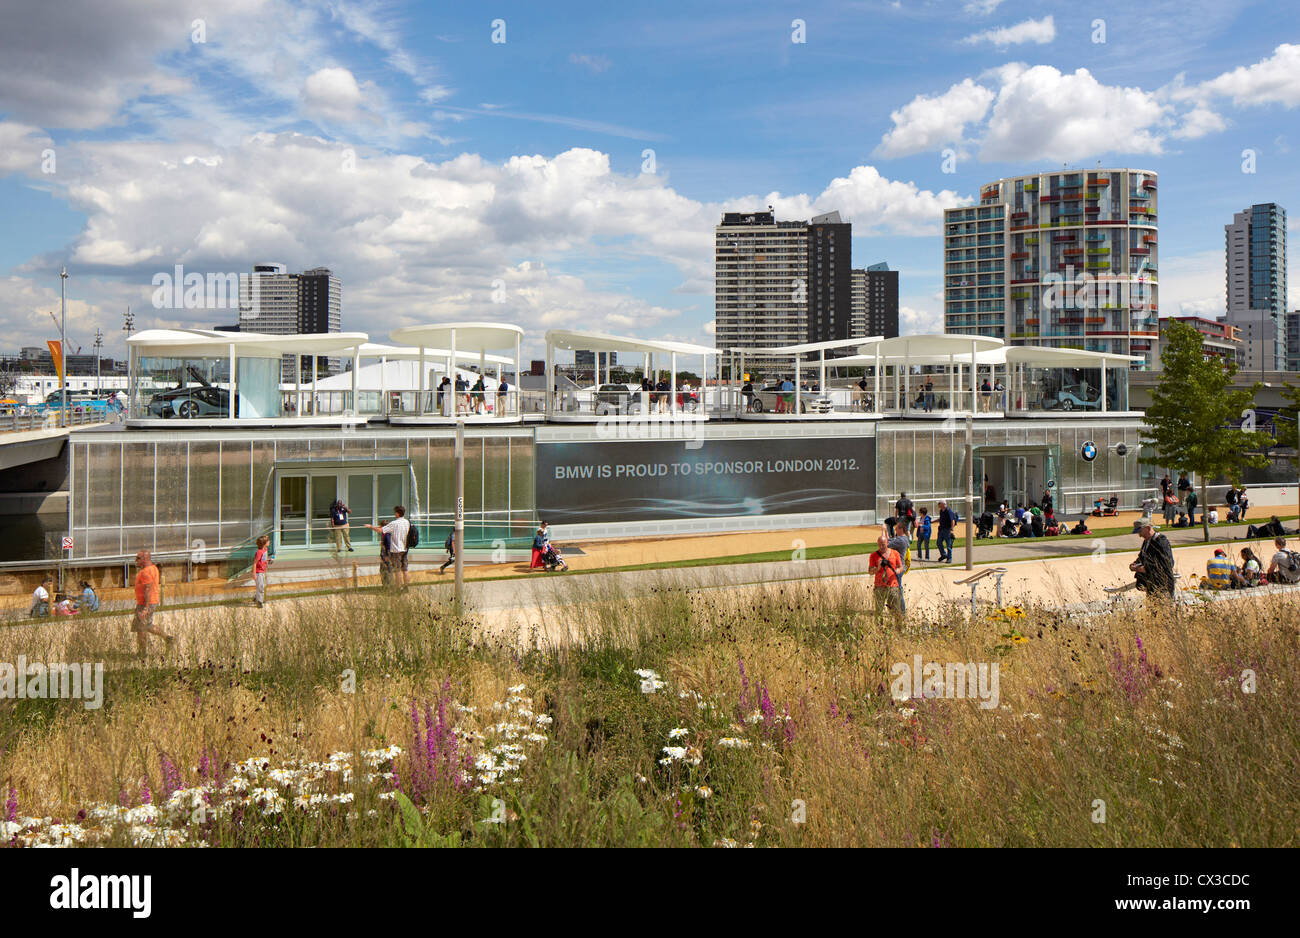 BMW Group Pavilion London 2012, Londra, Regno Unito. Architetto: Serie architetti, 2012. Foto Stock